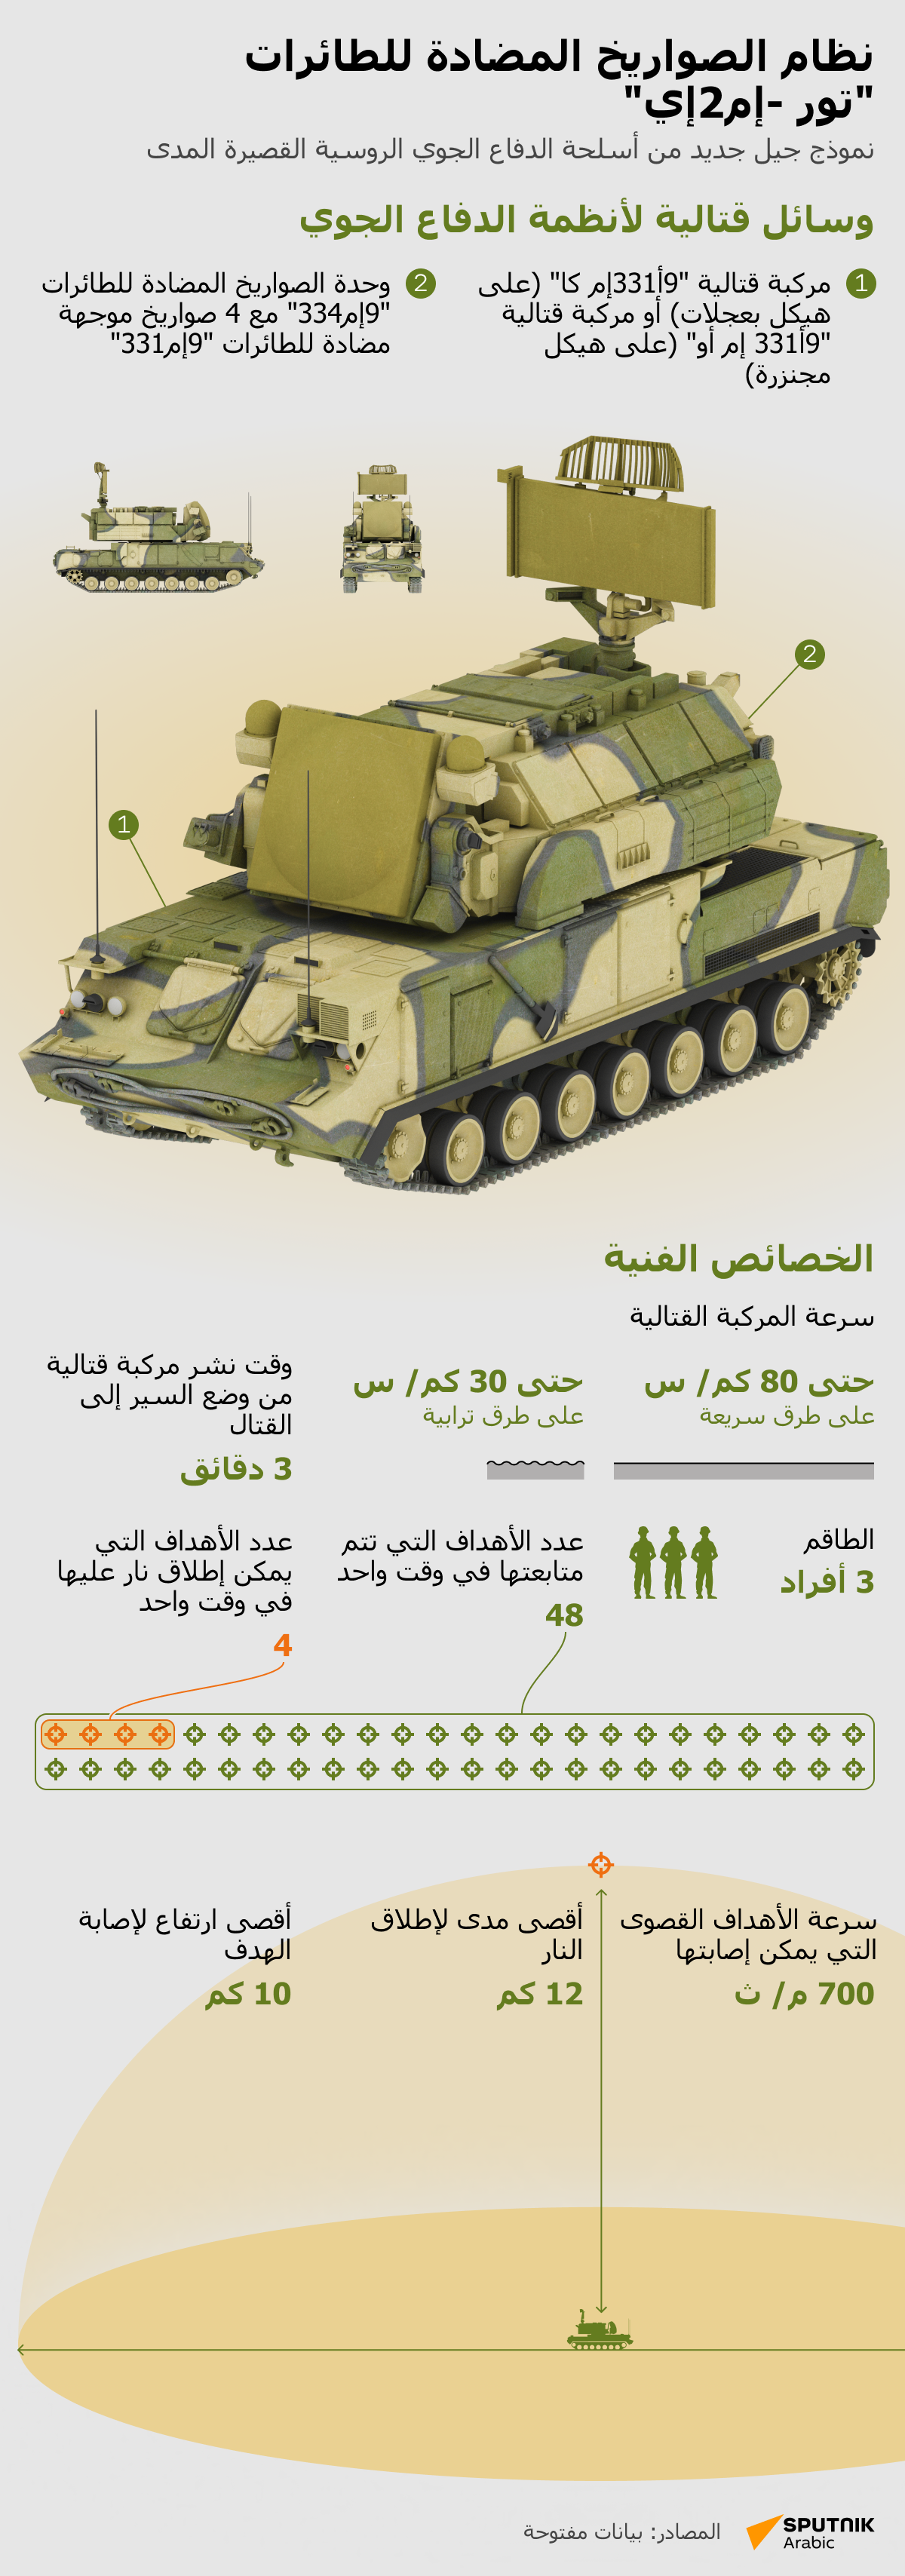 نظام الصواريخ المضادة للطائرات تور -إم2إي - سبوتنيك عربي